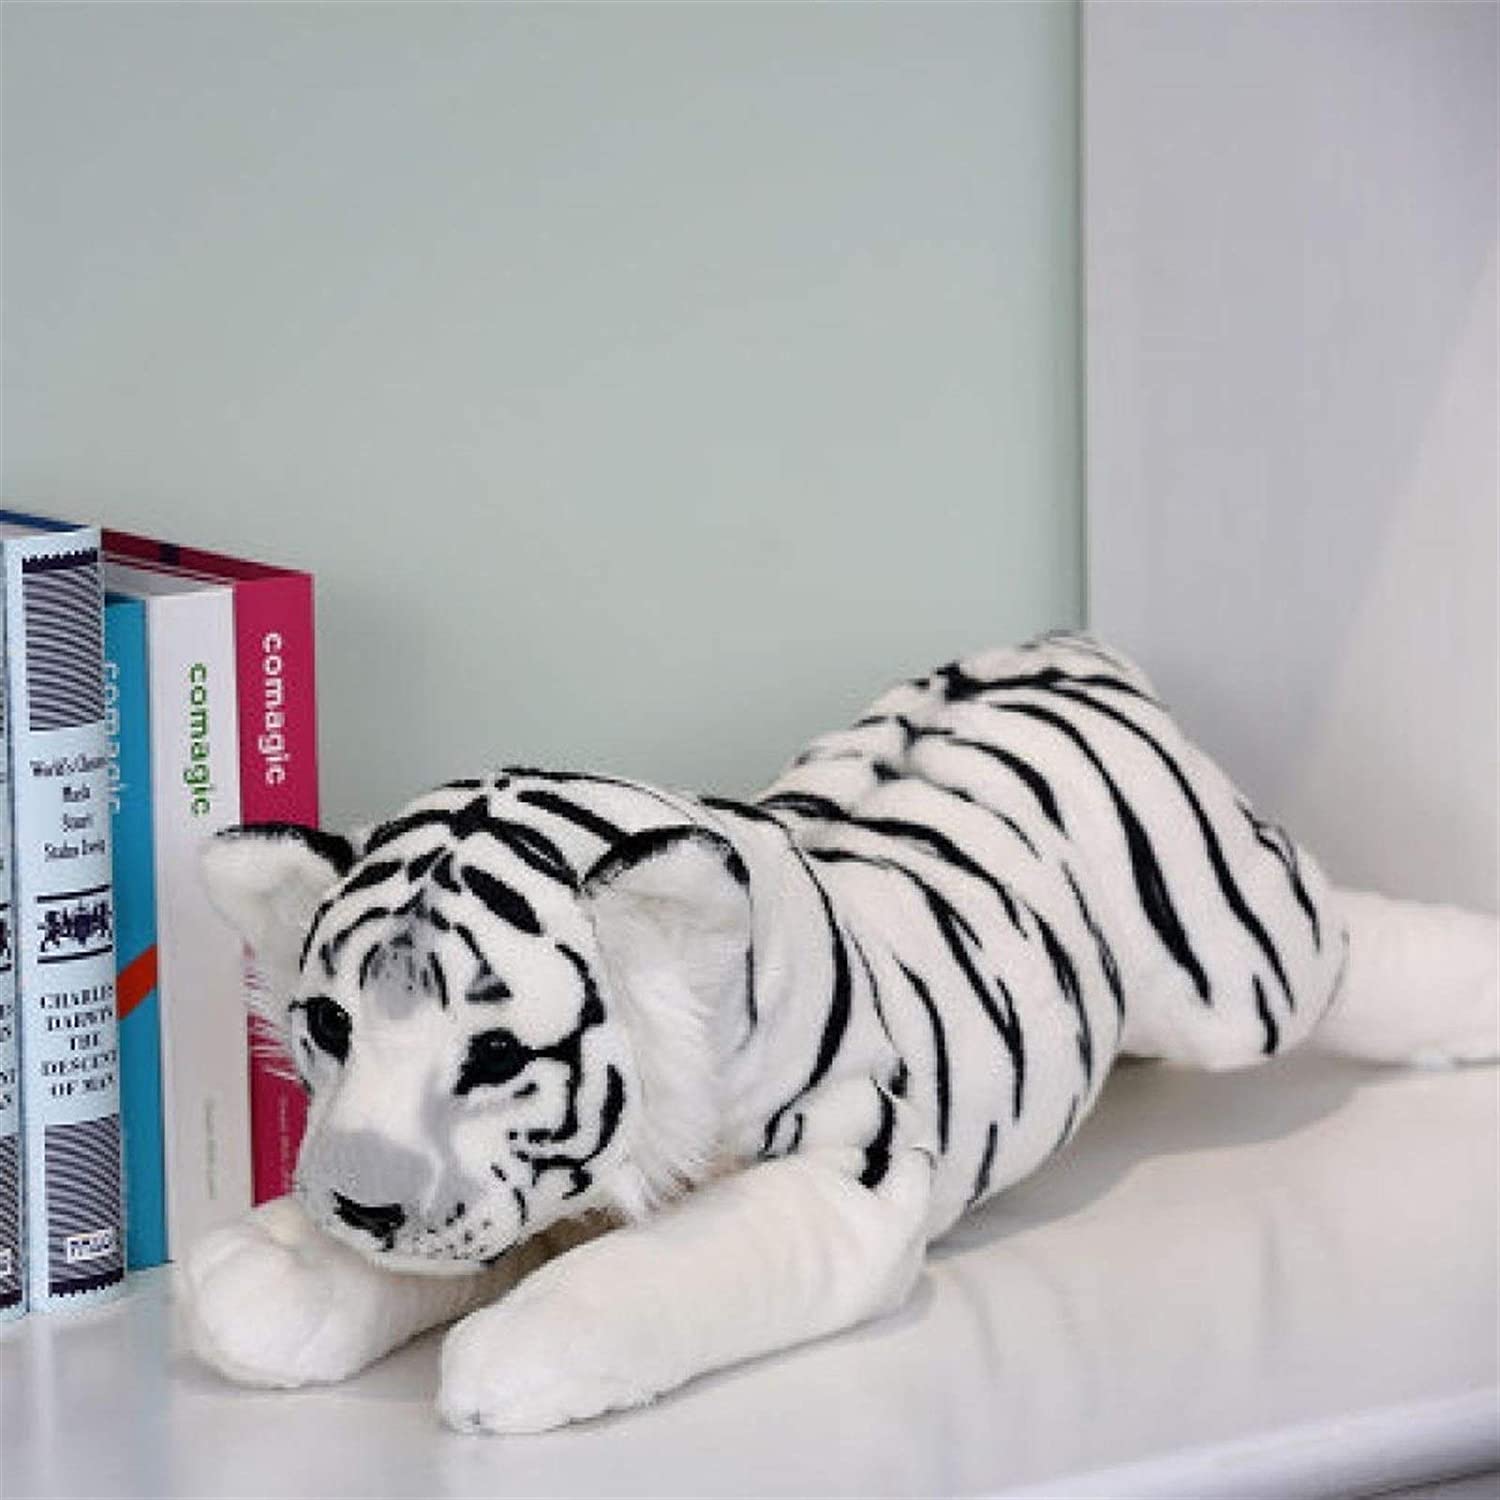 Tiger Plush Toy